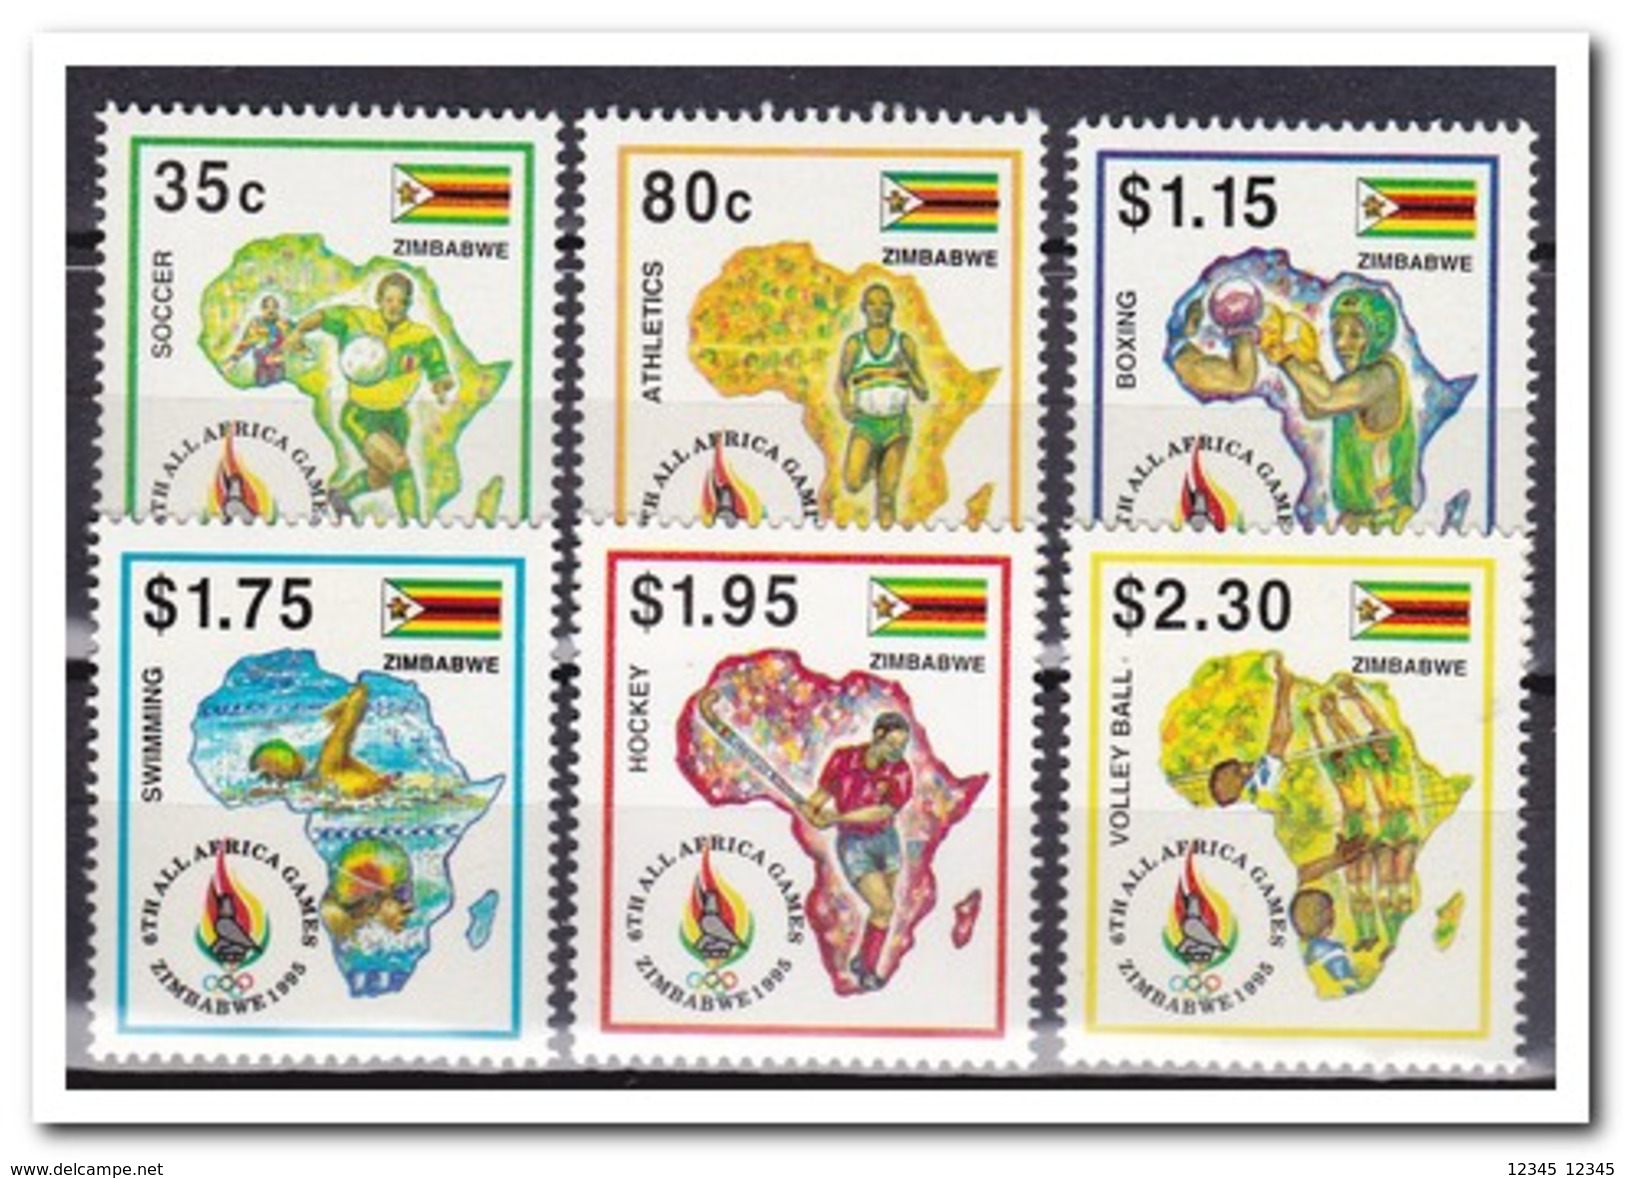 Zimbabwe 1994, Postfris MNH, Sport - Zimbabwe (1980-...)